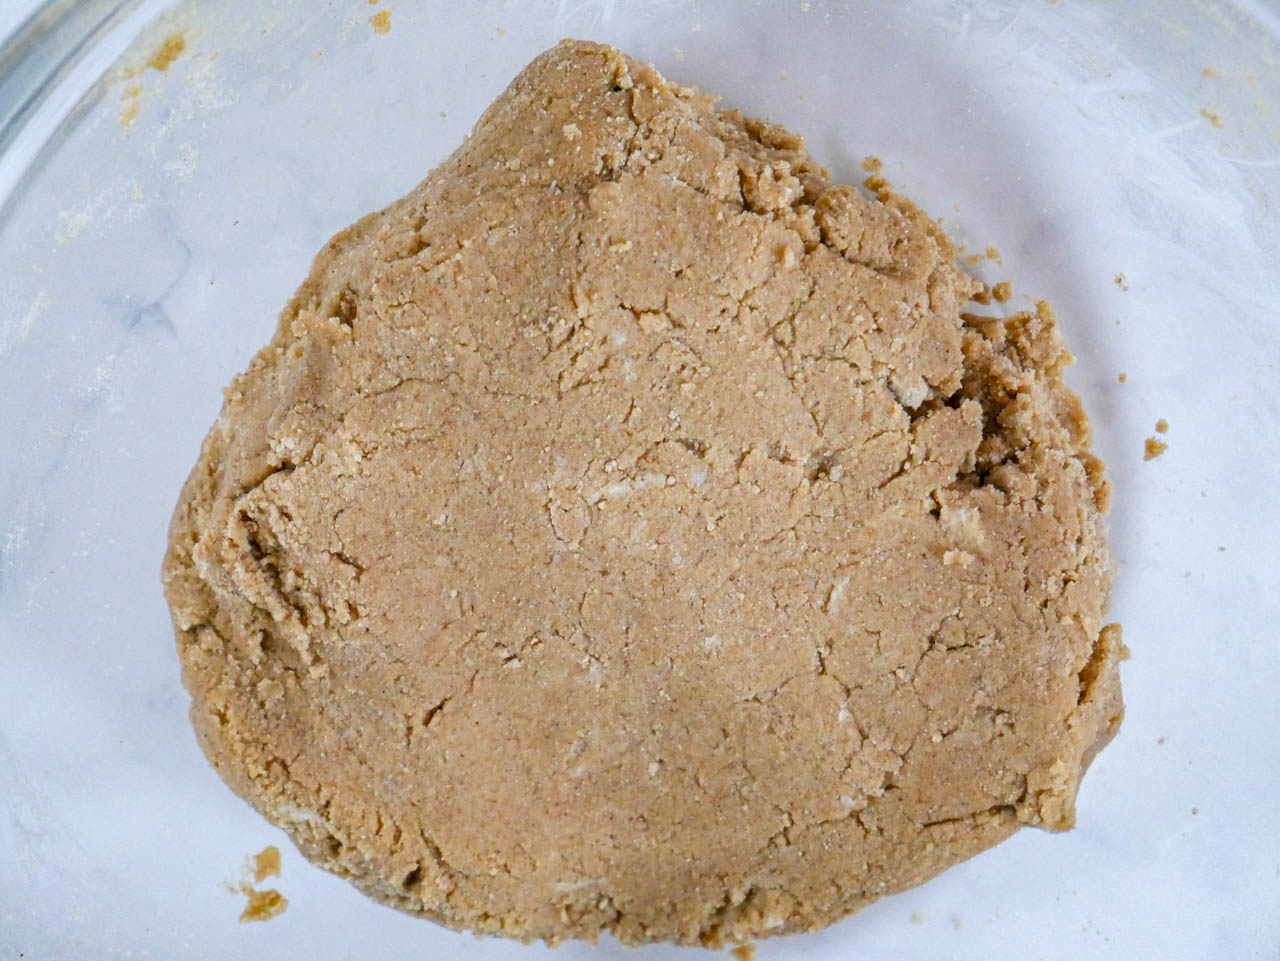 Graham cracker crust dough